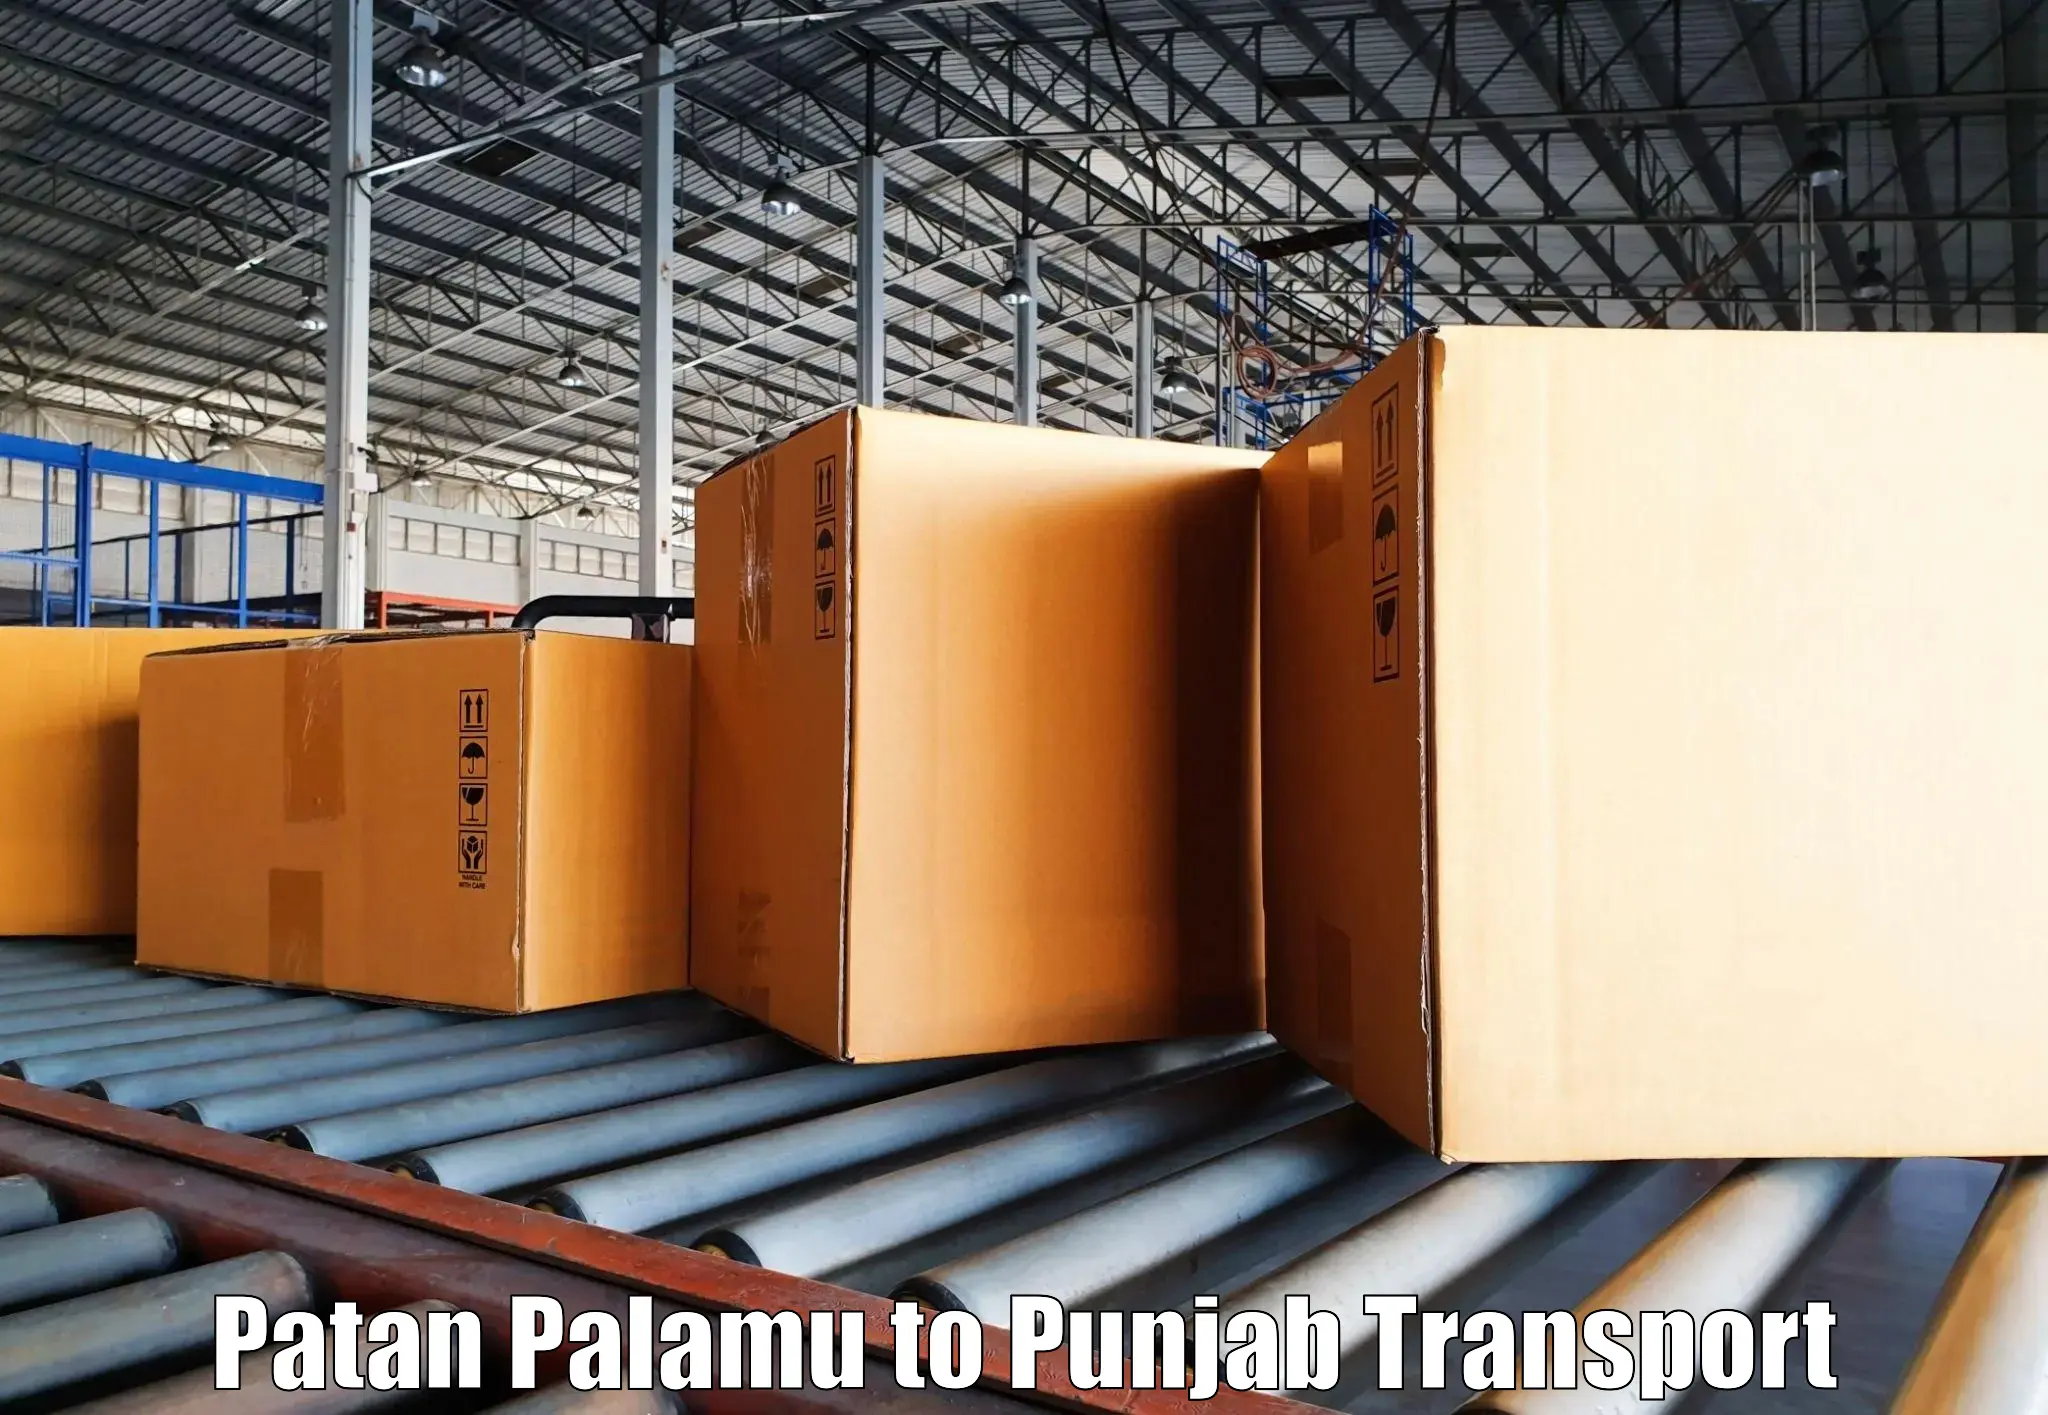 Pick up transport service Patan Palamu to Begowal